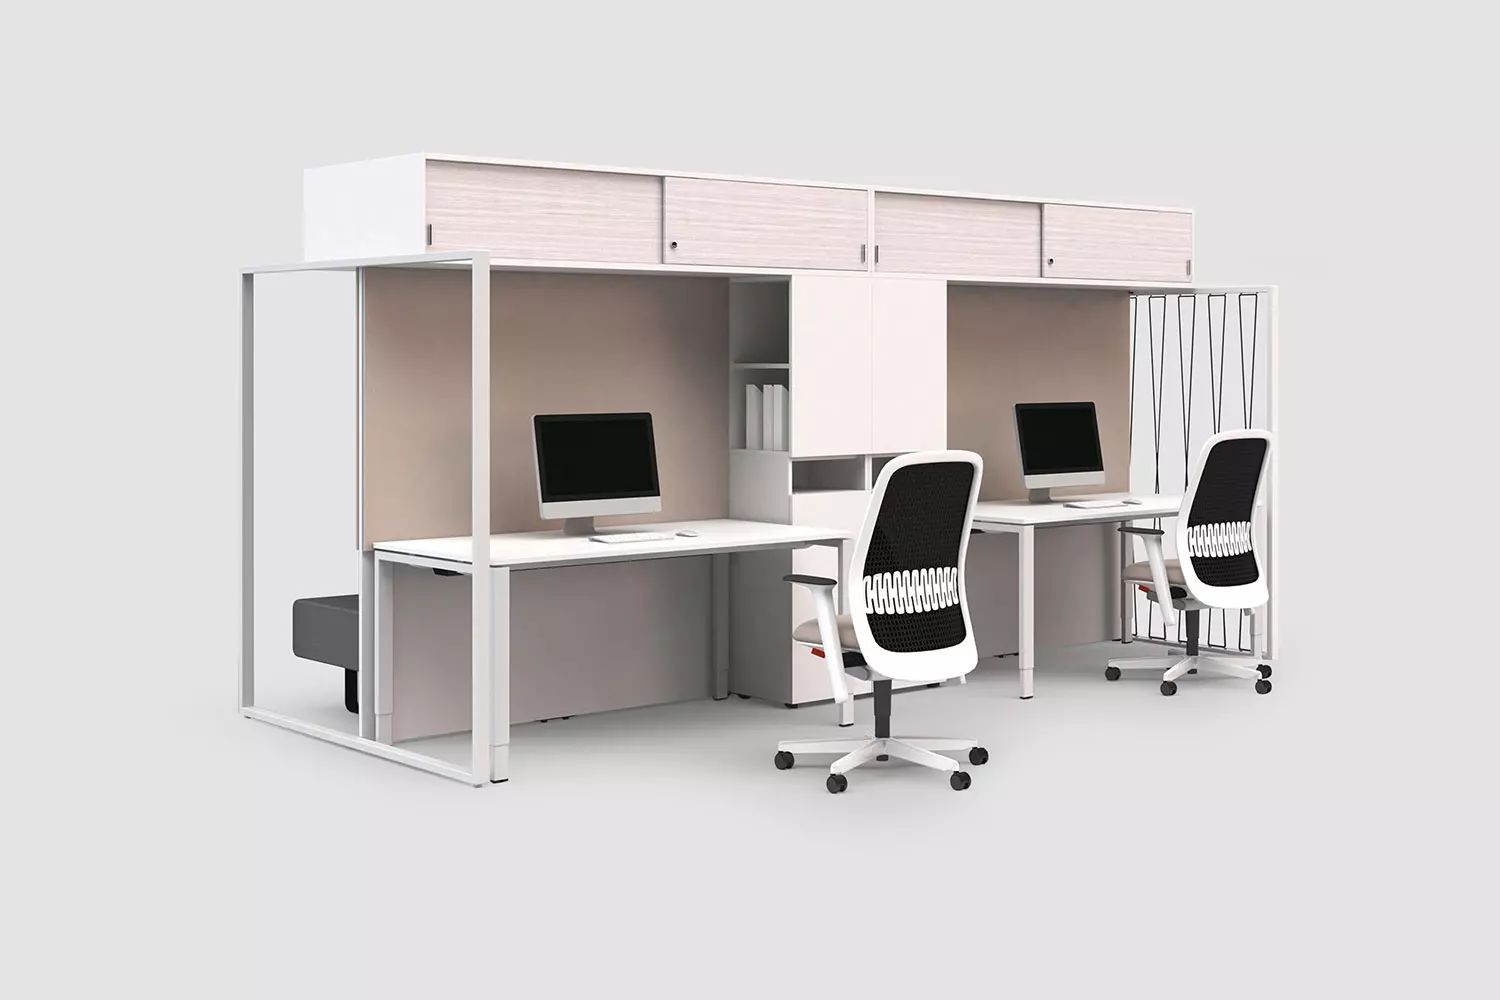 FRAME_S, Aufsatzbox Regal Schrank Raumstrukurierung Arbeitslatzsystem, Bene Büromöbel, Bild 1